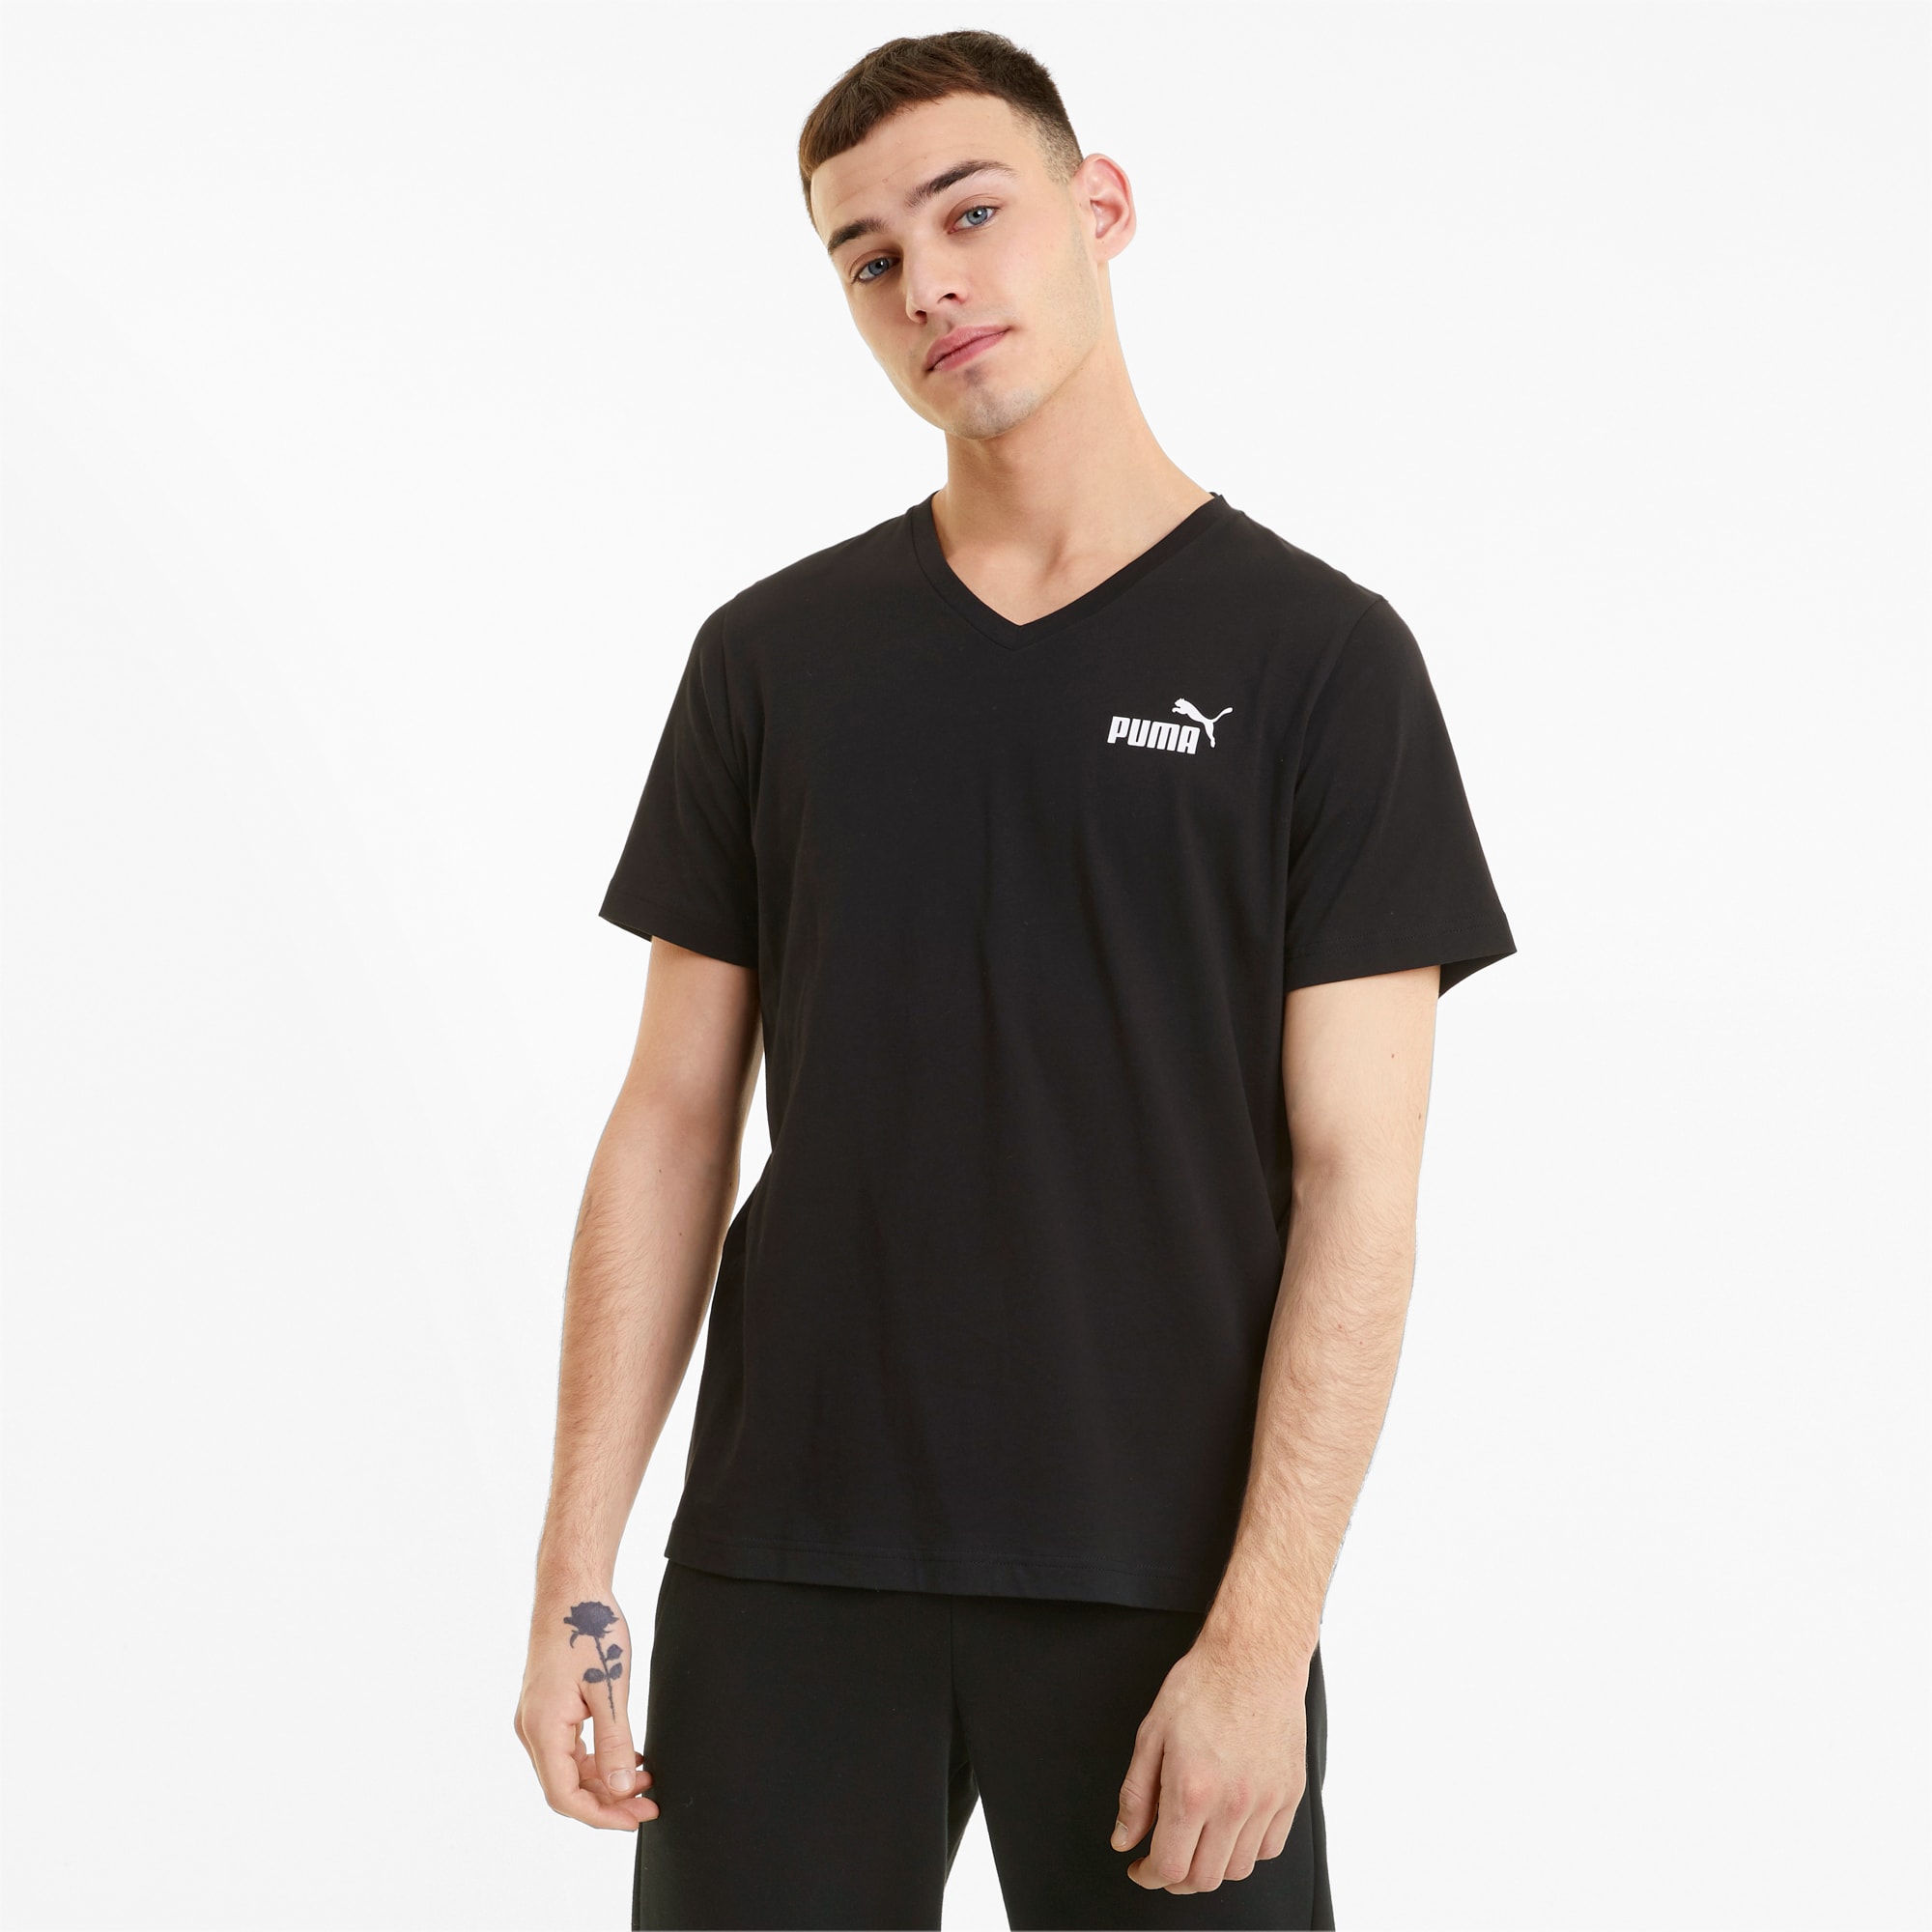 PUMA Essentials V-Neck T-Shirt Men, Black, Size L, Clothing